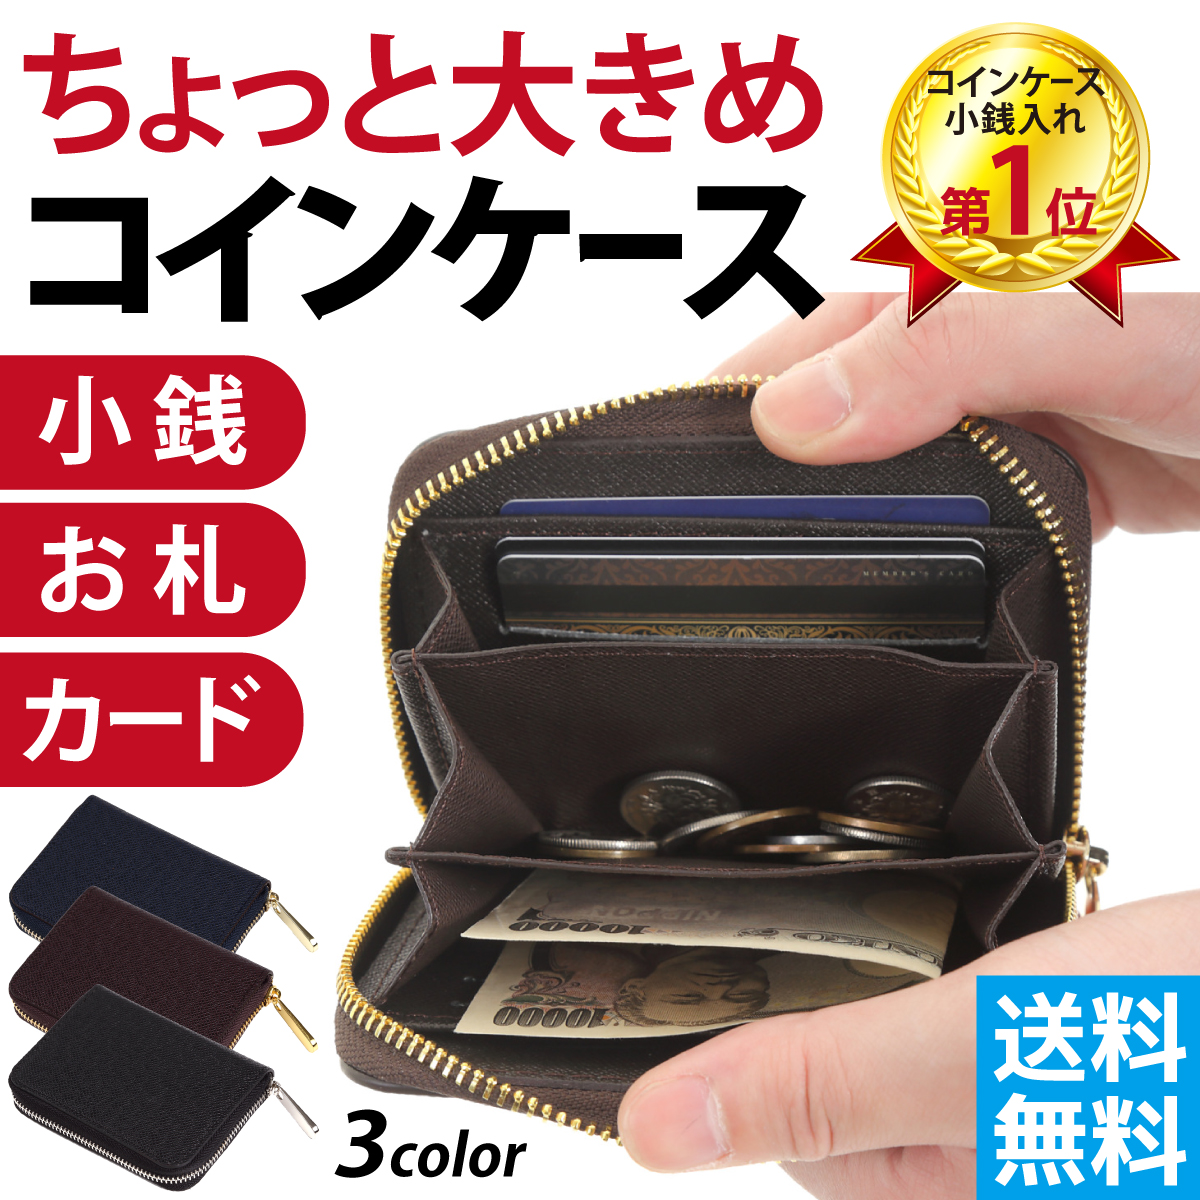 小銭入れ コインケース 財布 ウォレット ミニサイズ シンプル ファスナー コンパクト 小さめ 大容量 おしゃれ ブラック メンズ  :AS042:Laddtm 通販 